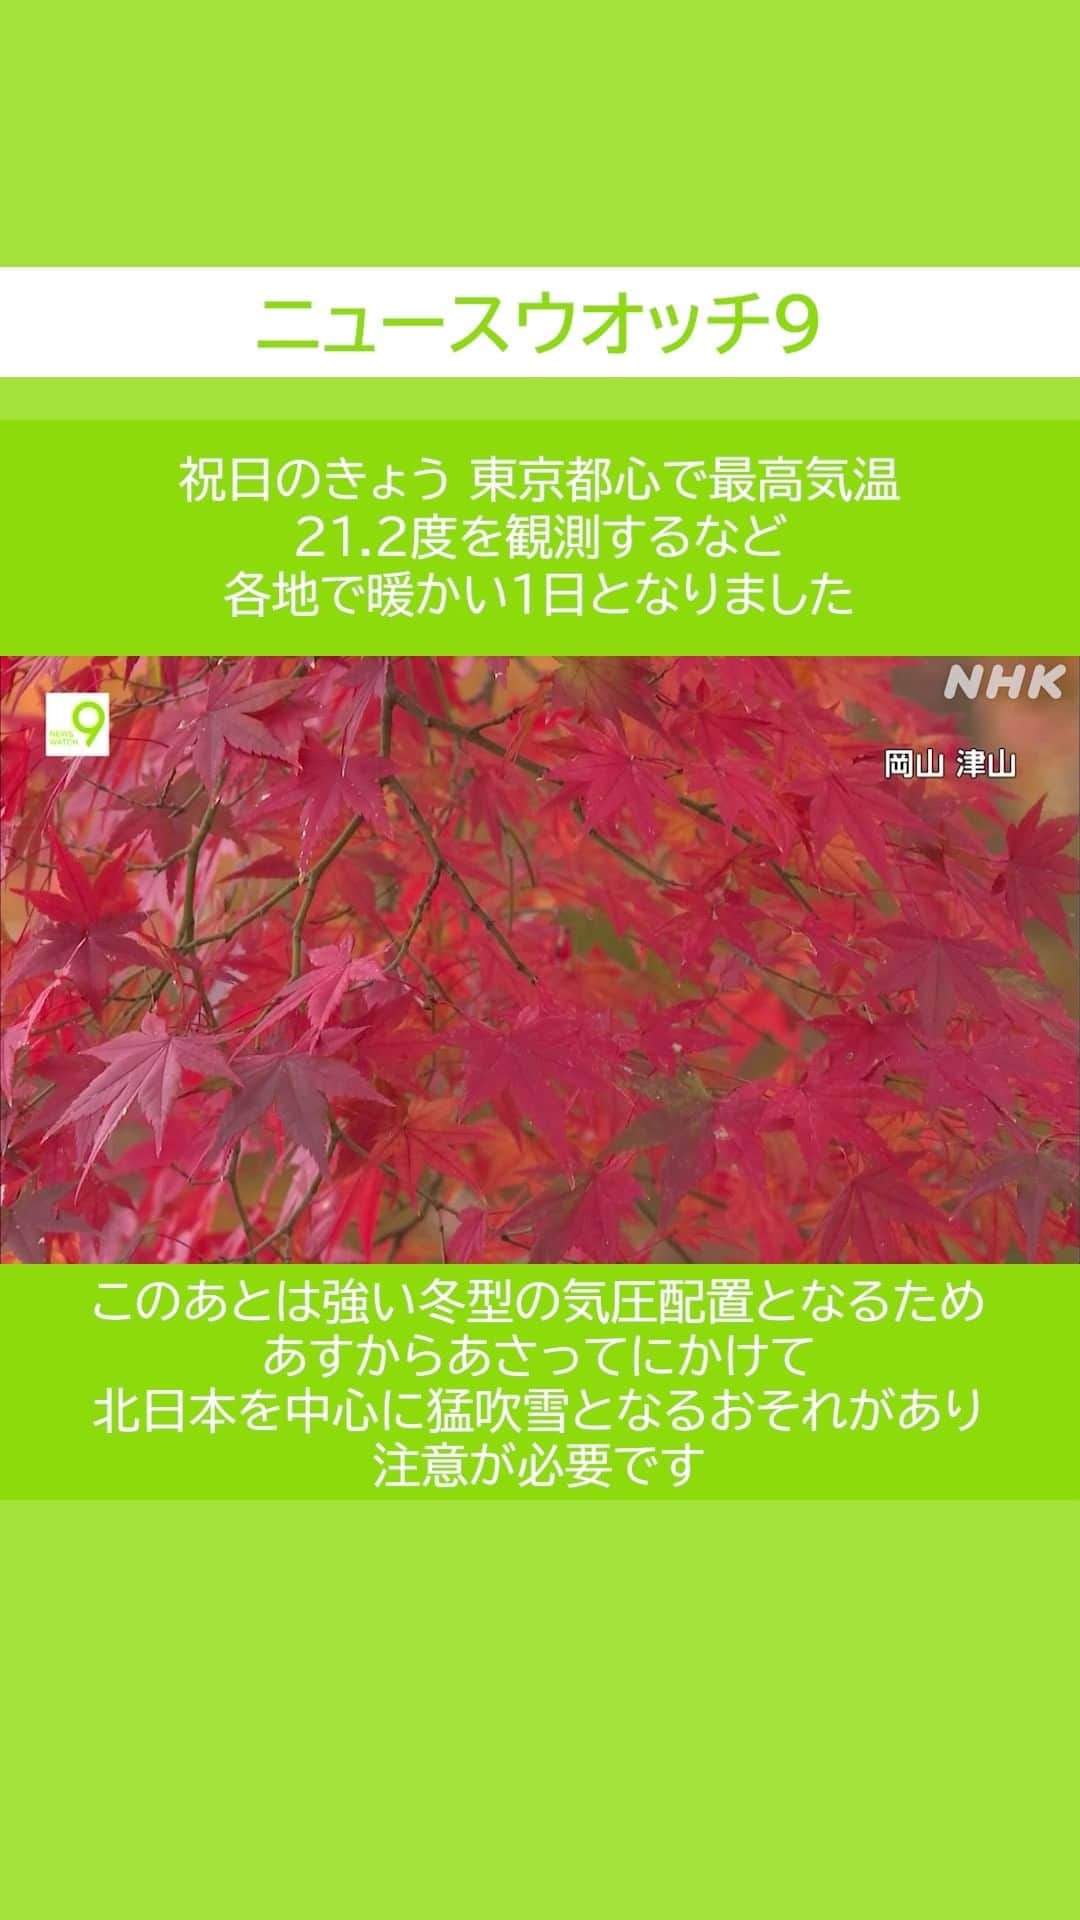 NHK「ニュースウオッチ９」のインスタグラム：「祝日のきょう 東京都心で最高気温 21.2度を観測するなど 各地で暖かい1日となりました  このあとは 強い冬型の気圧配置となるため あすからあさってにかけて 北日本を中心に 猛吹雪となるおそれがあり 注意が必要です  #夜9時 #NHK #NHKプラス #ニュースウオッチ9 #テレビ #ニュース #ショート動画」